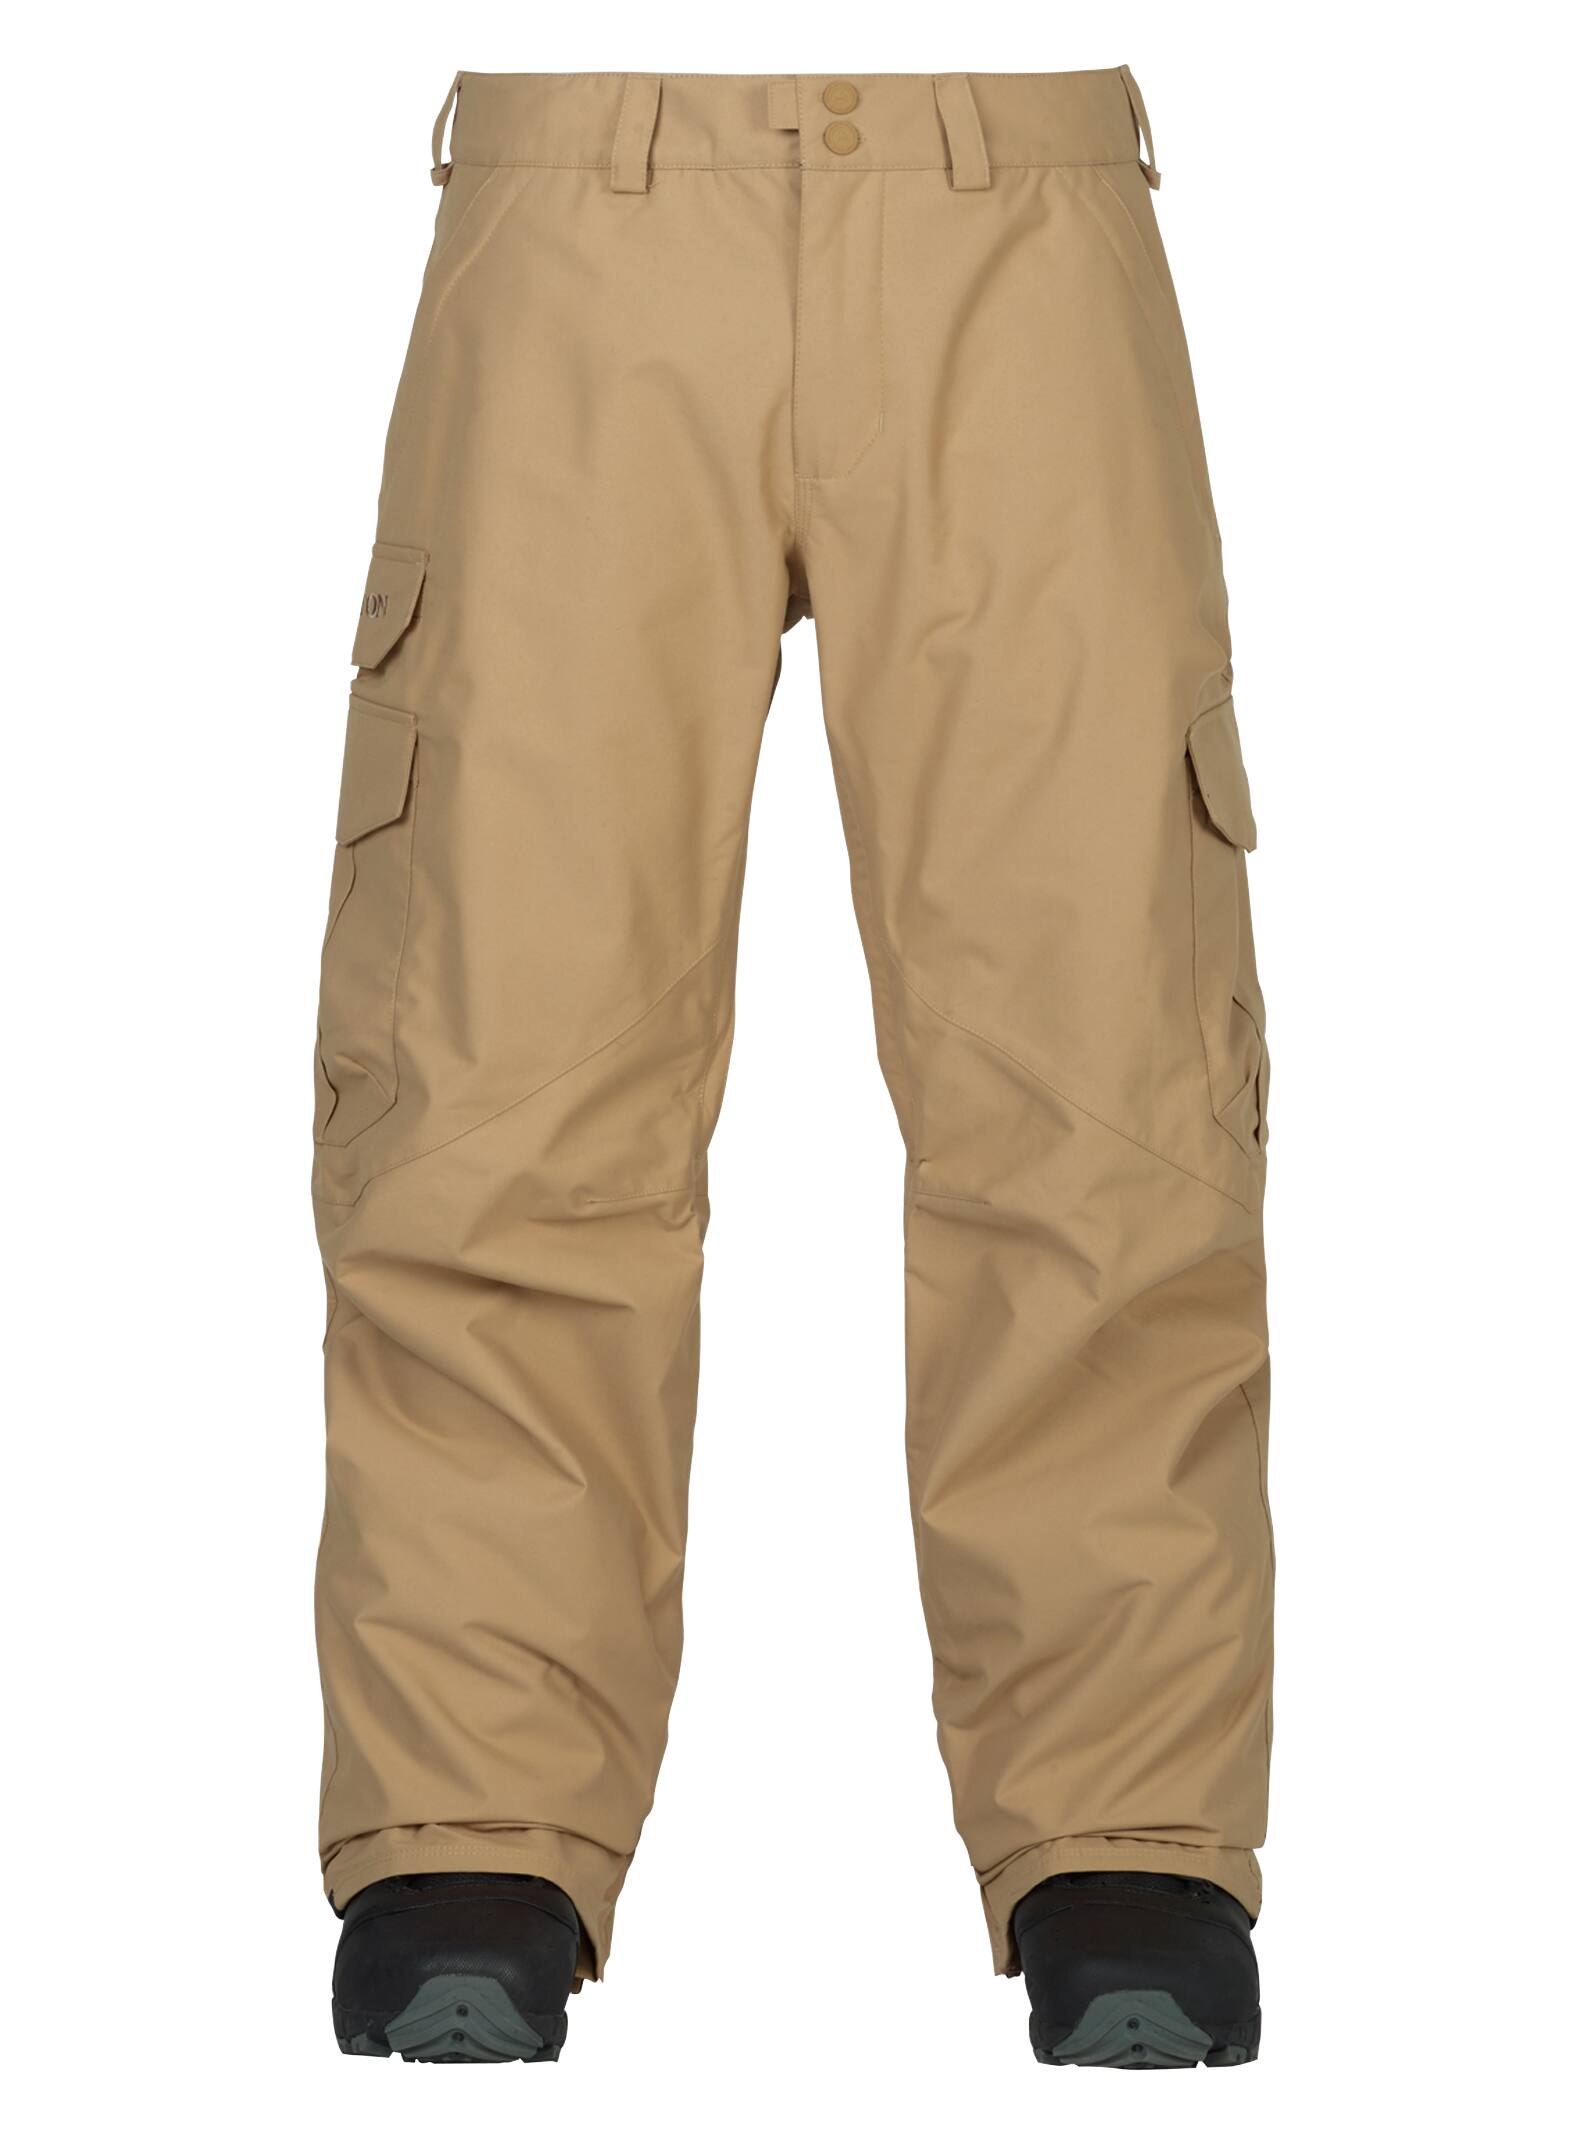 Burton - Pantalon cargo coupe classique homme, Kelp, S